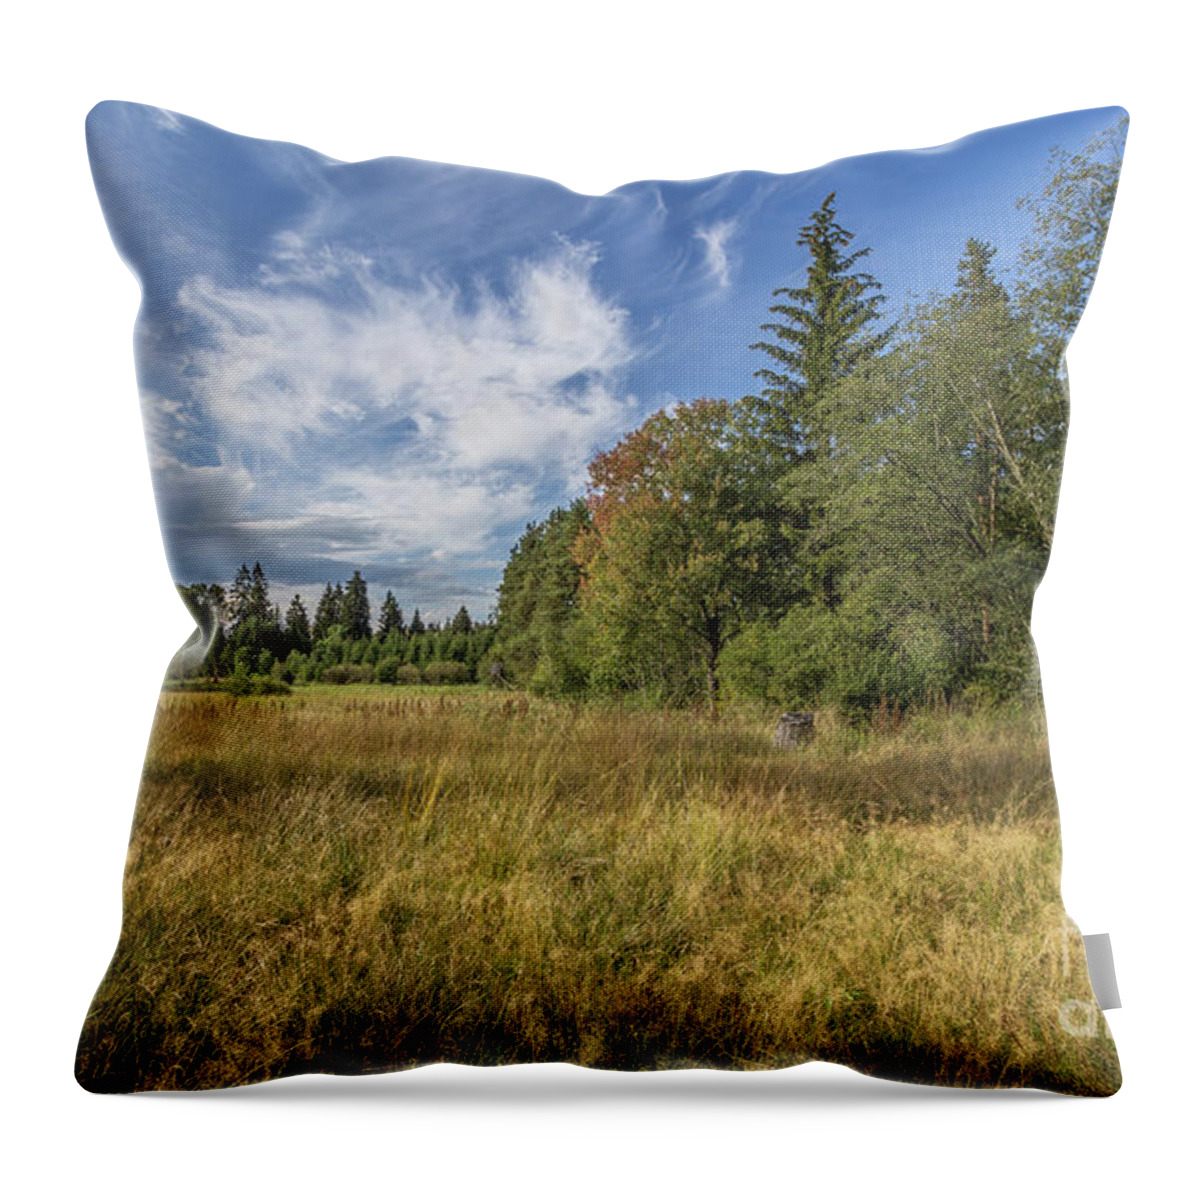 Moorlands Throw Pillow featuring the photograph Wetlands by Bernd Laeschke